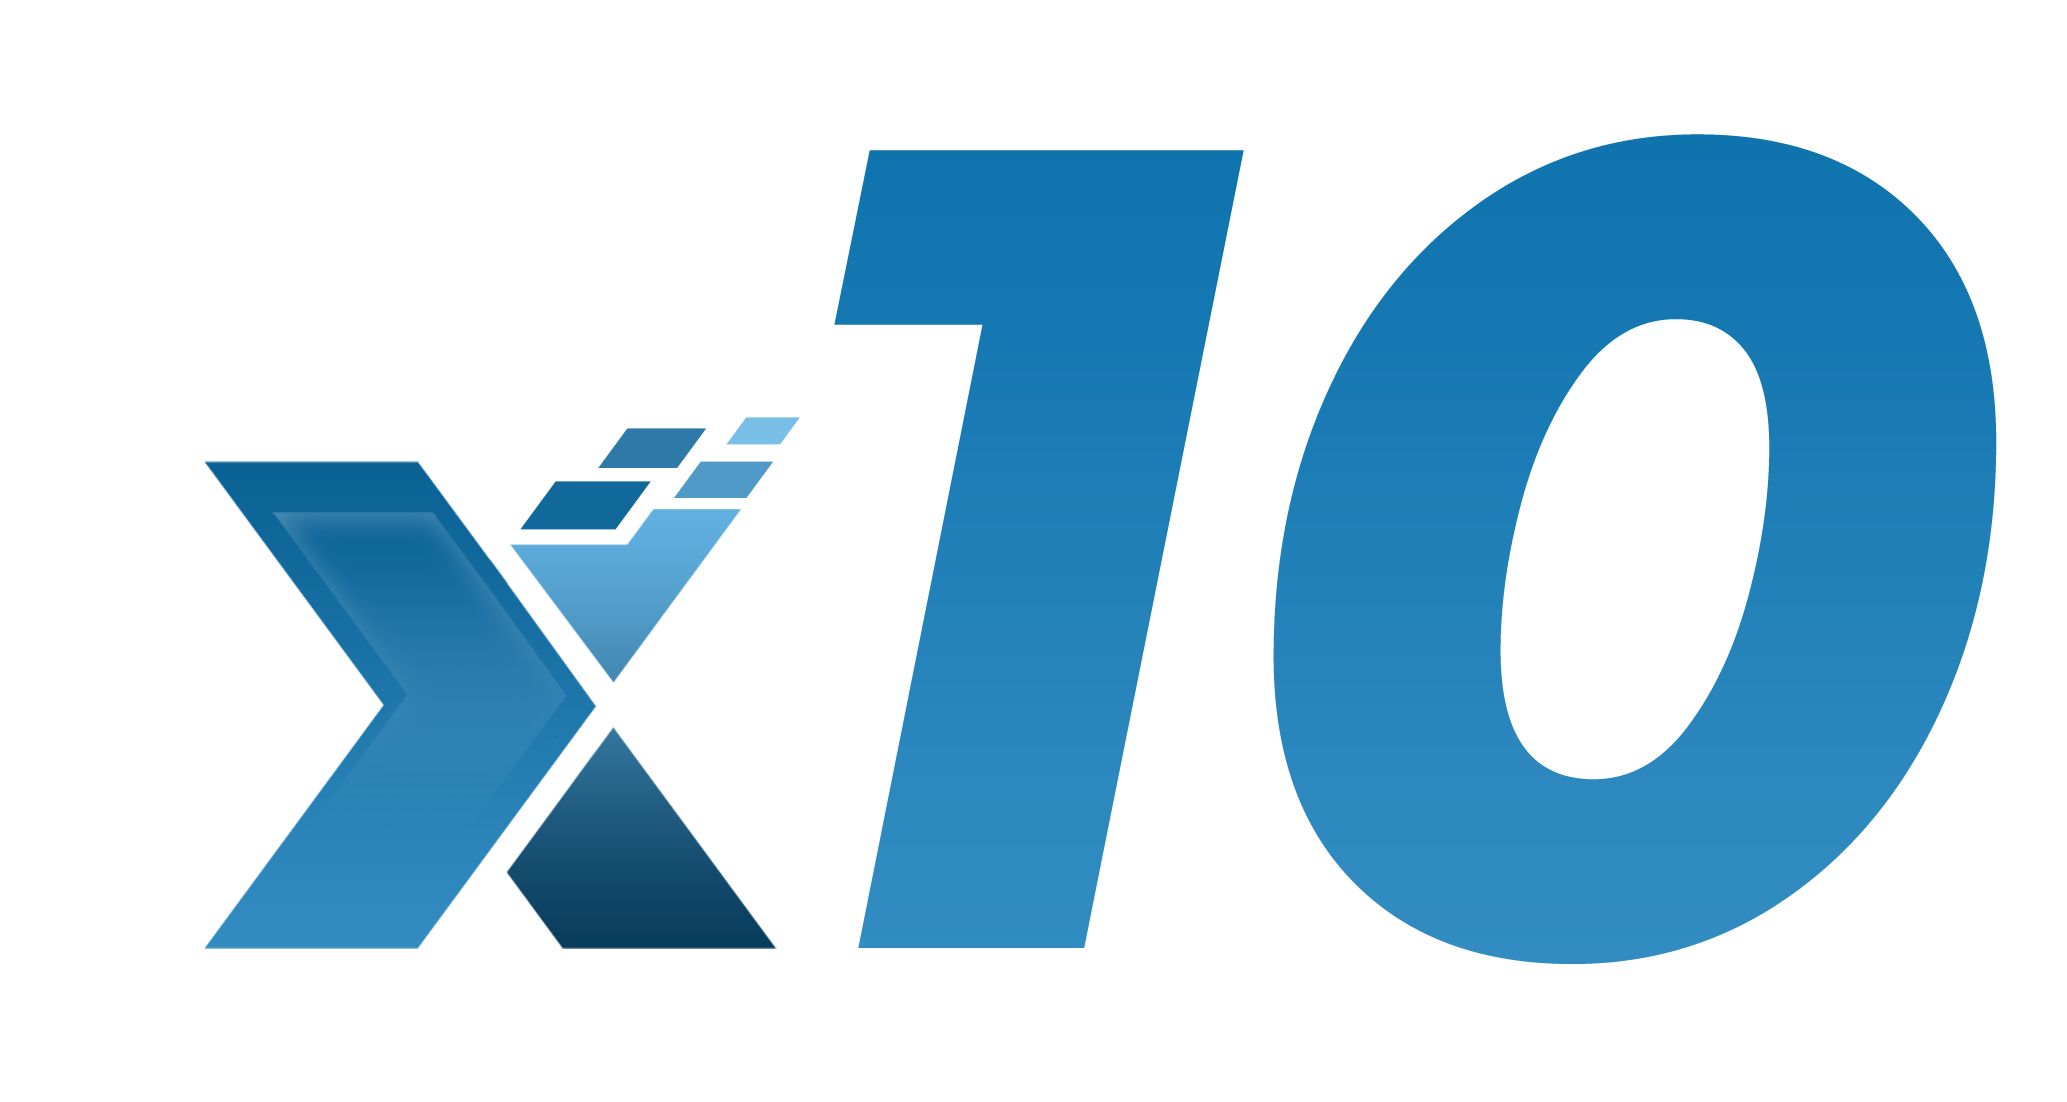 x10